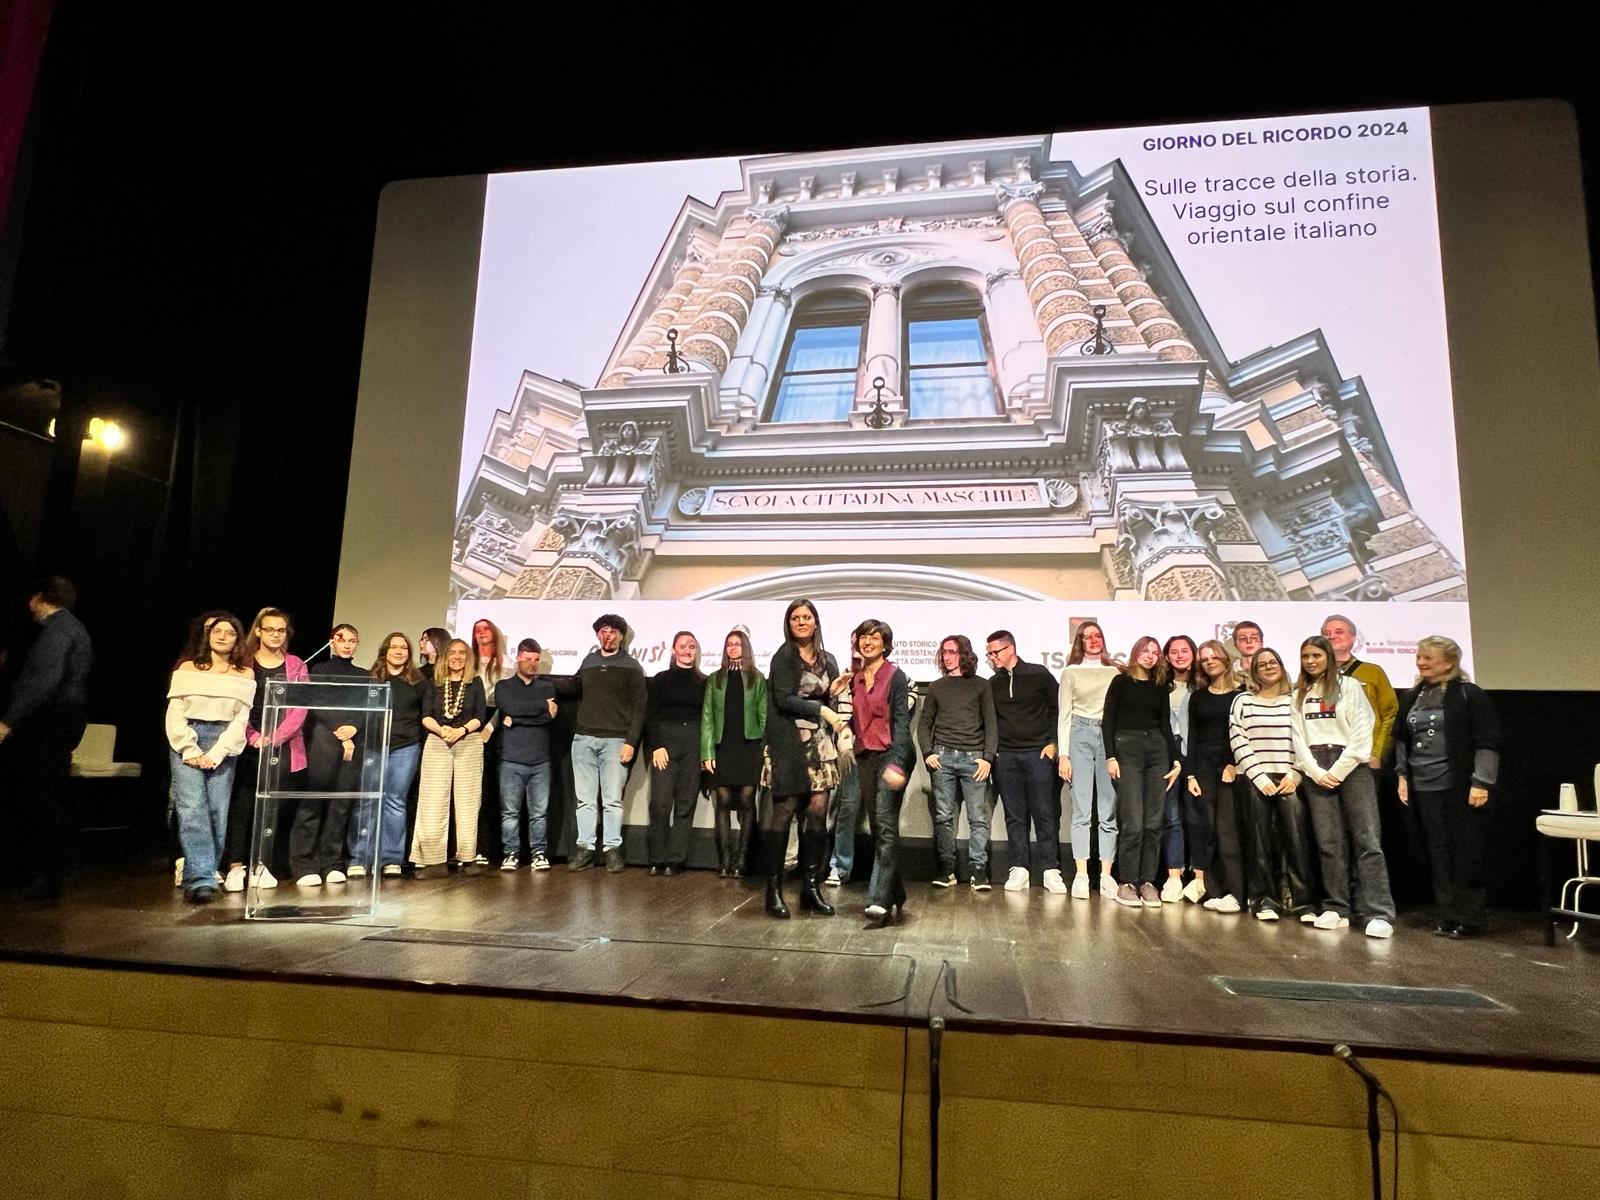 Giorno del ricordo, sul palco studenti italiani e croati spiegano insieme le foibe 